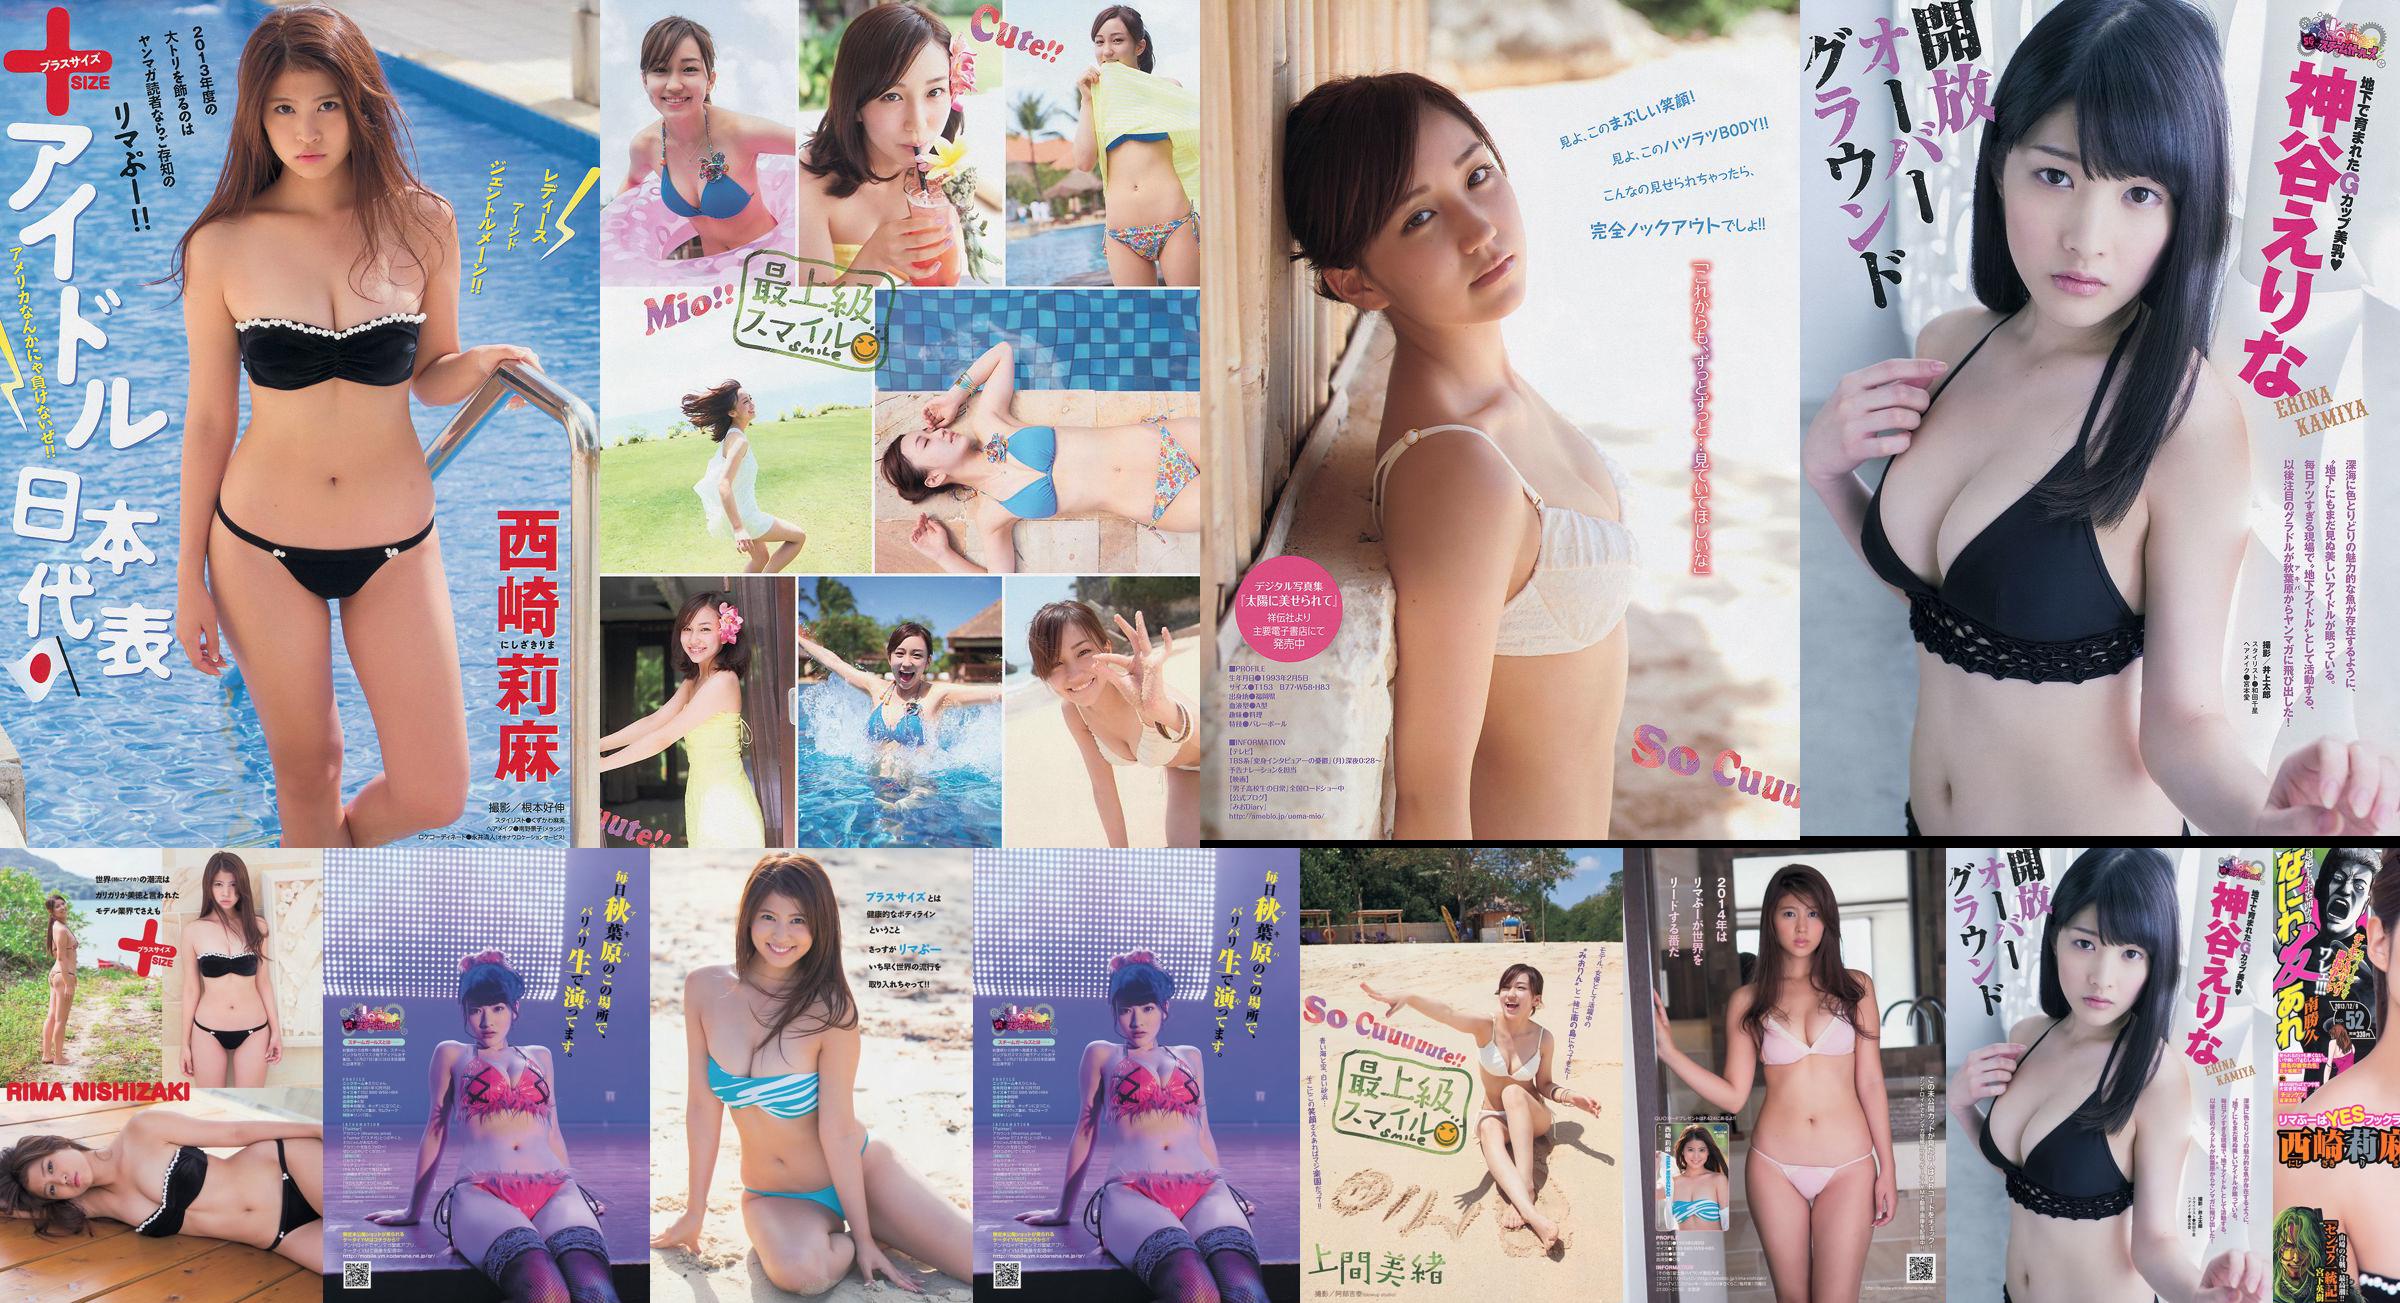 [Junge Zeitschrift] Rima Nishizaki Mio Uema Erina Kamiya 2013 Nr. 52 Foto Moshi No.219961 Seite 1